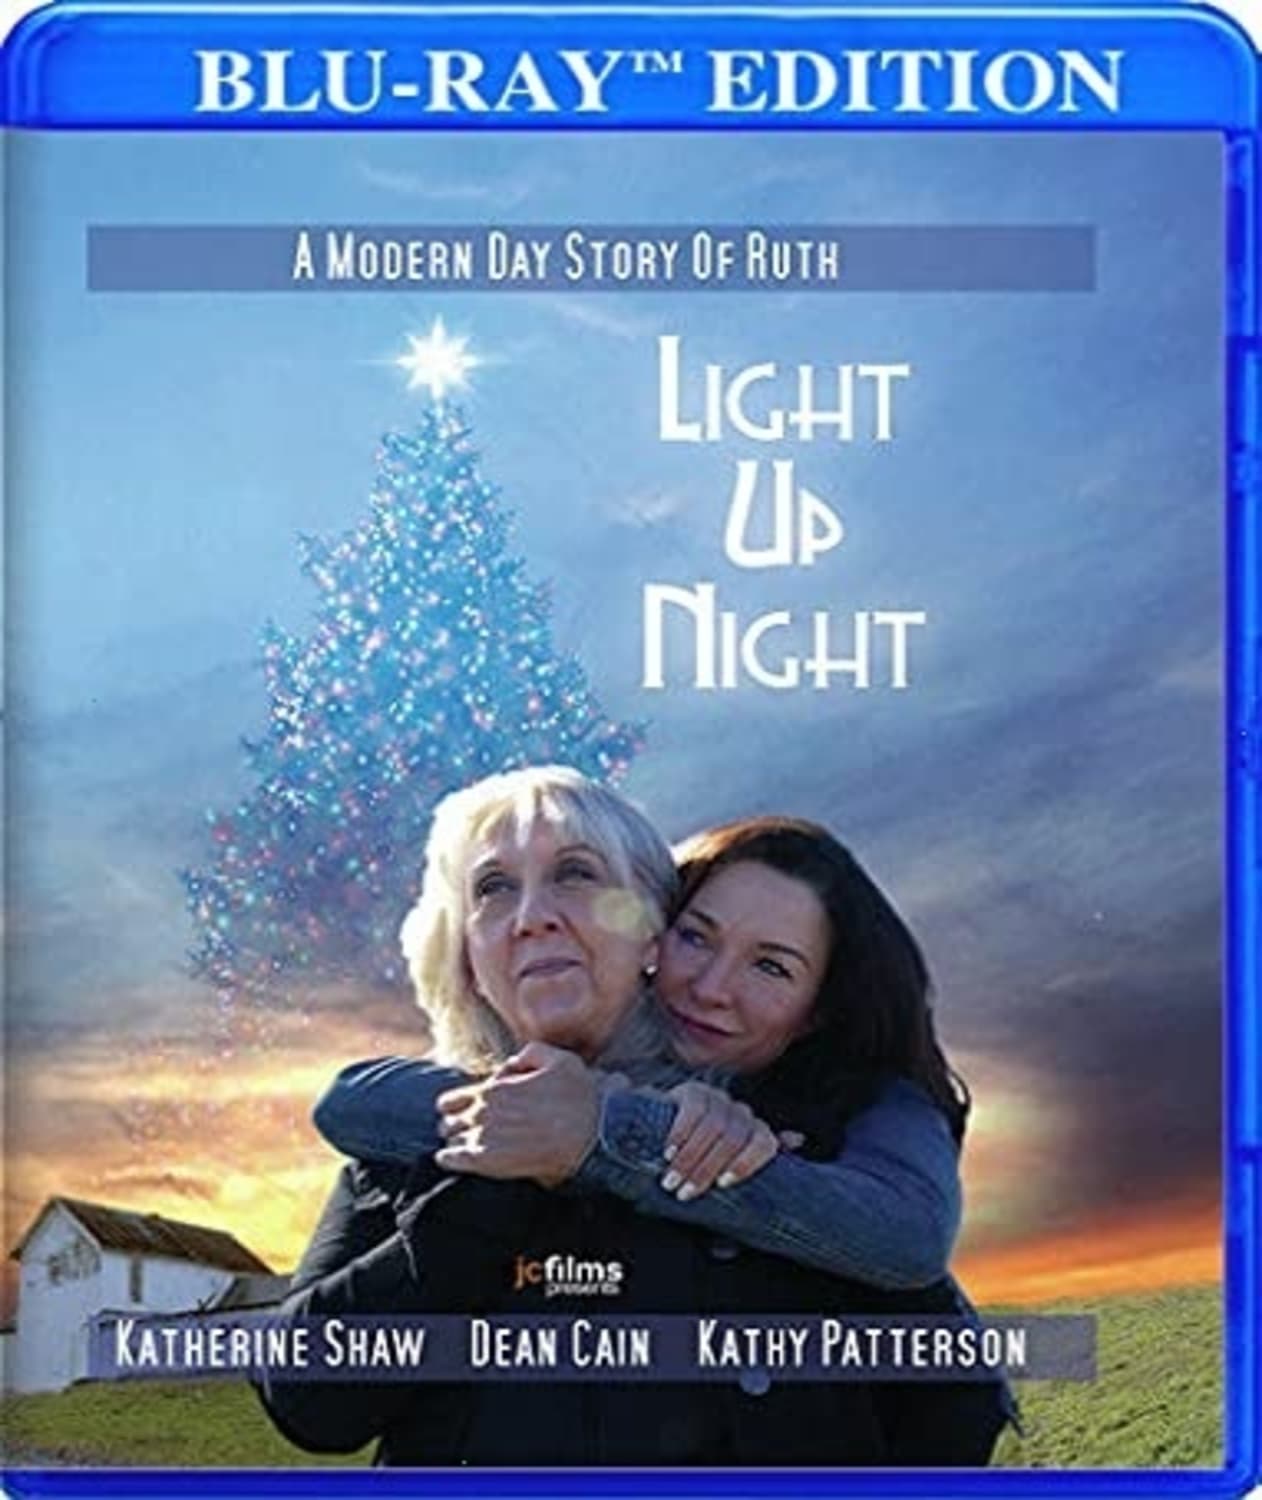 Light Up Night (Blu-ray) on MovieShack